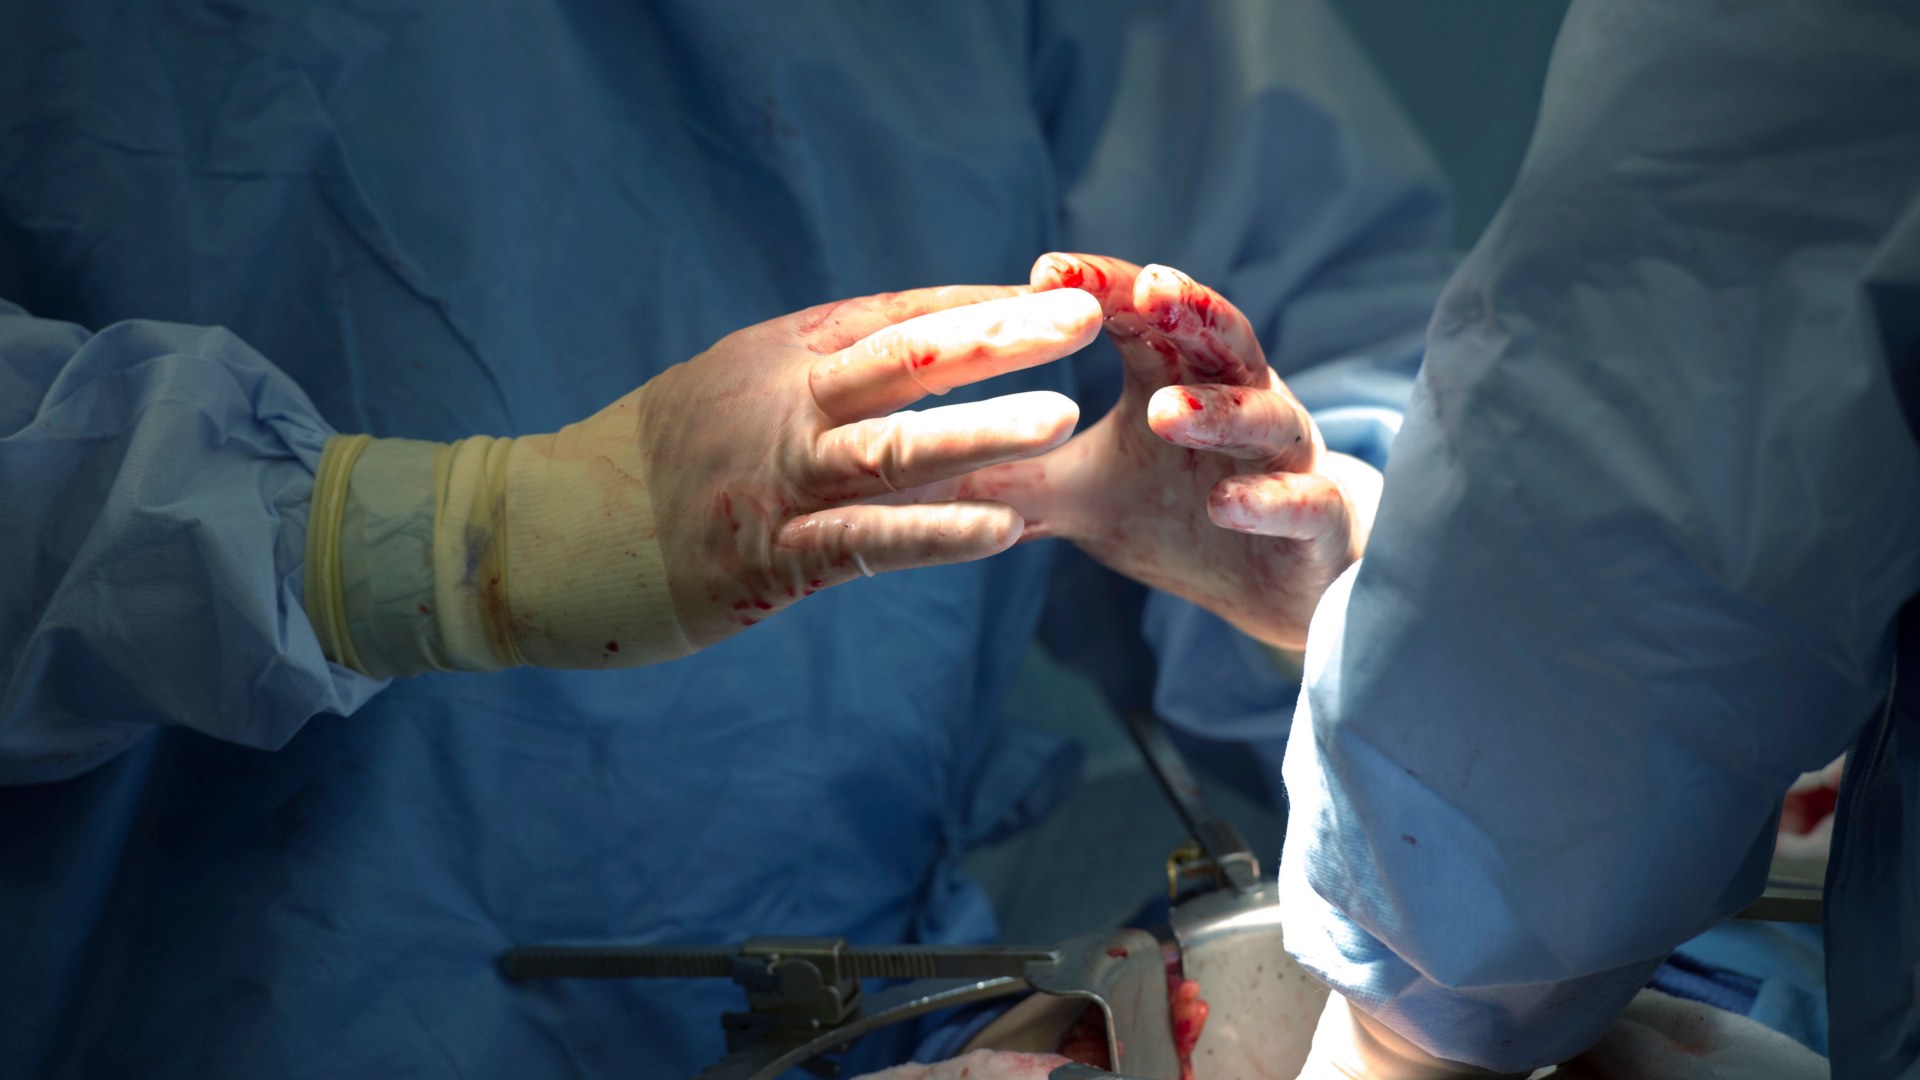 España registra unos 13 incidentes diarios por implantes defectuosos